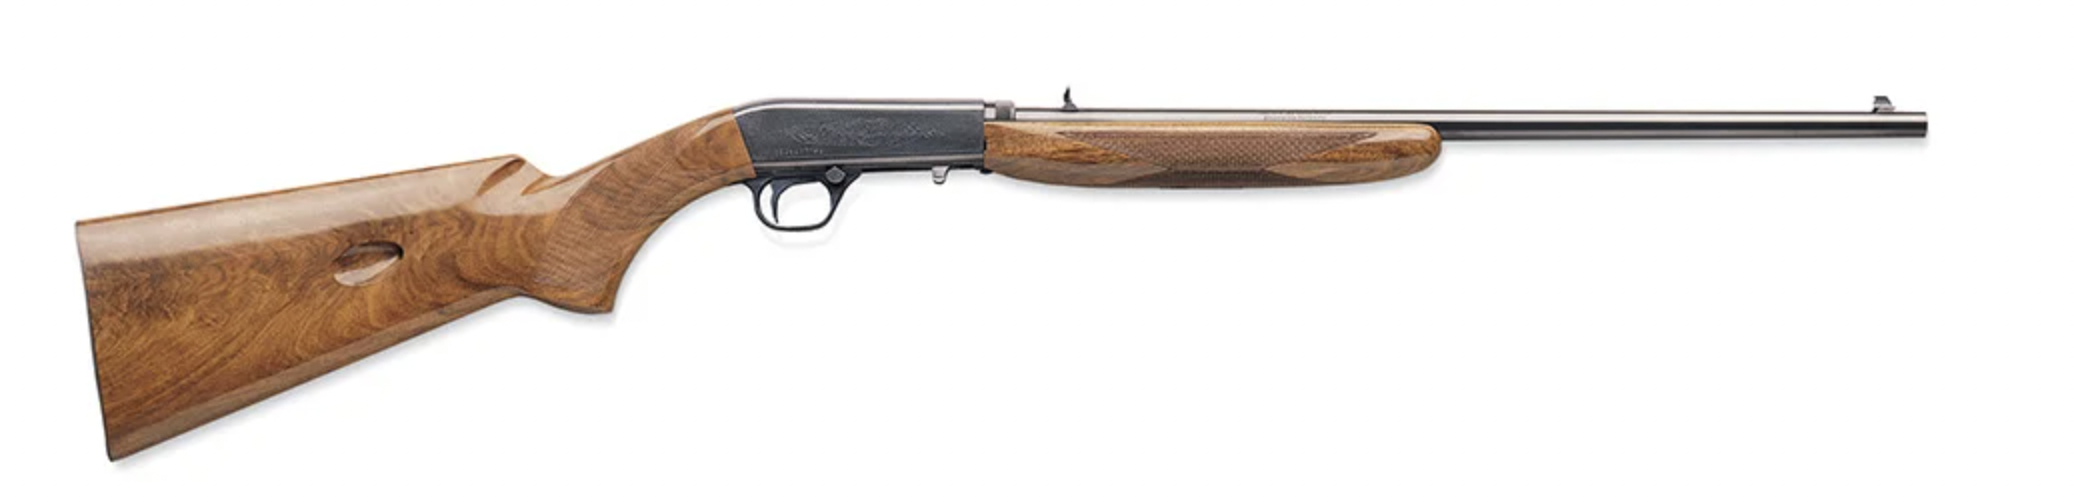 A brown rifle